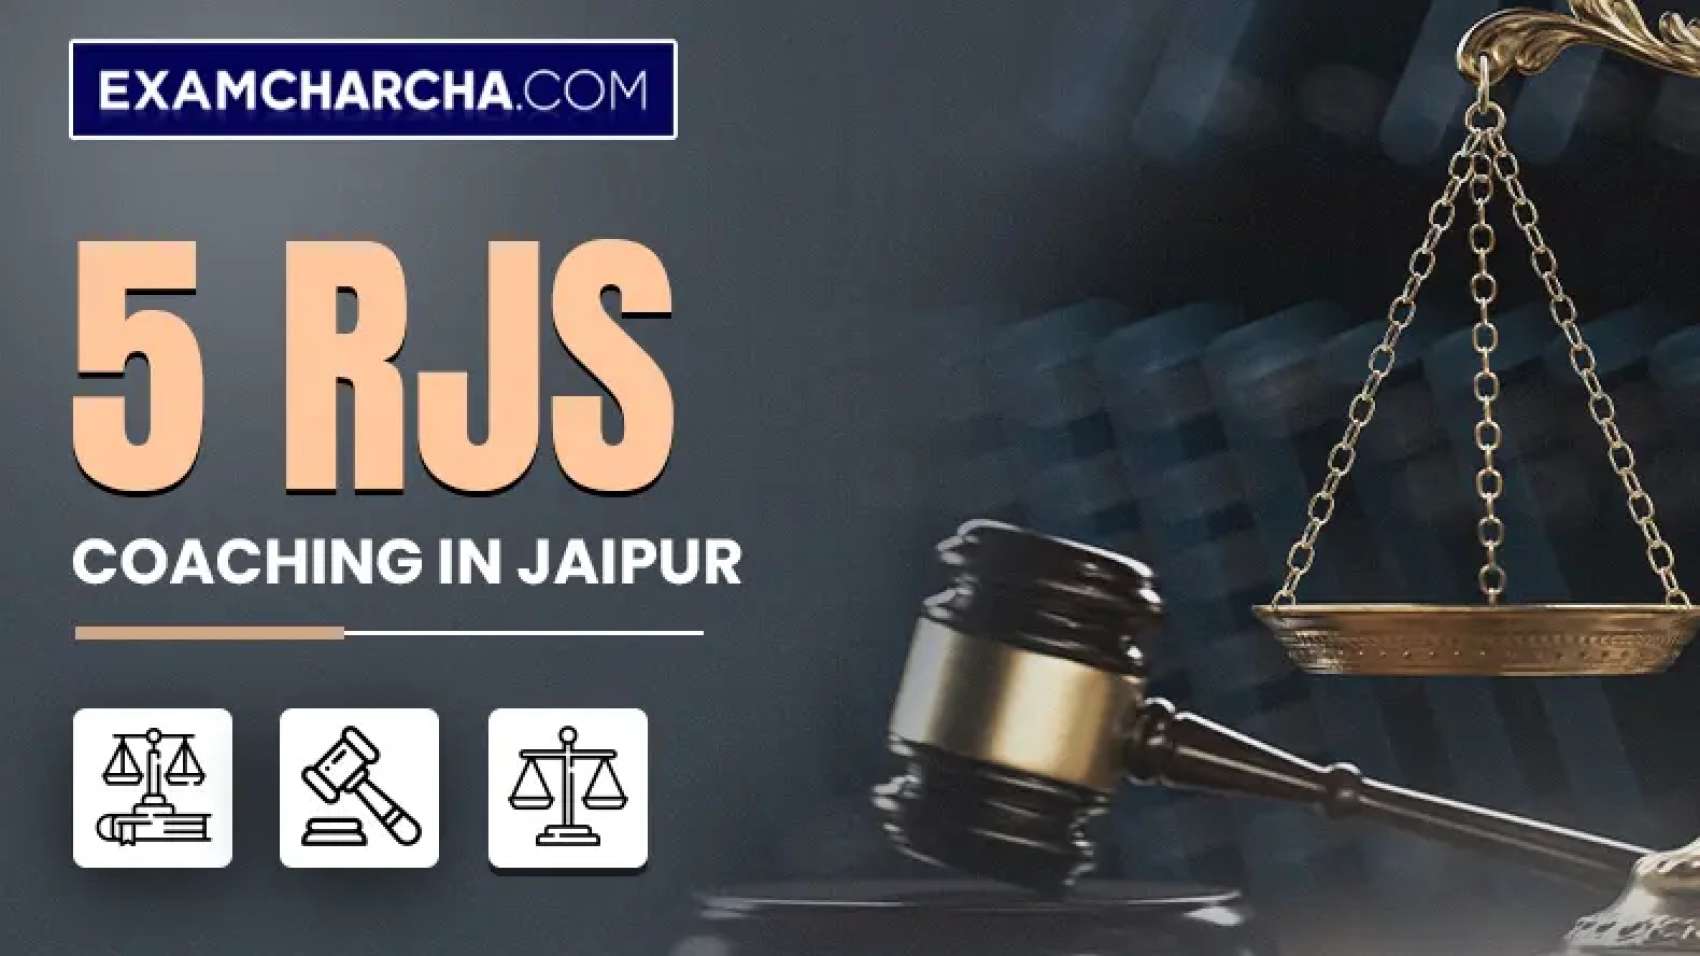 RJS Coaching in Jaipur